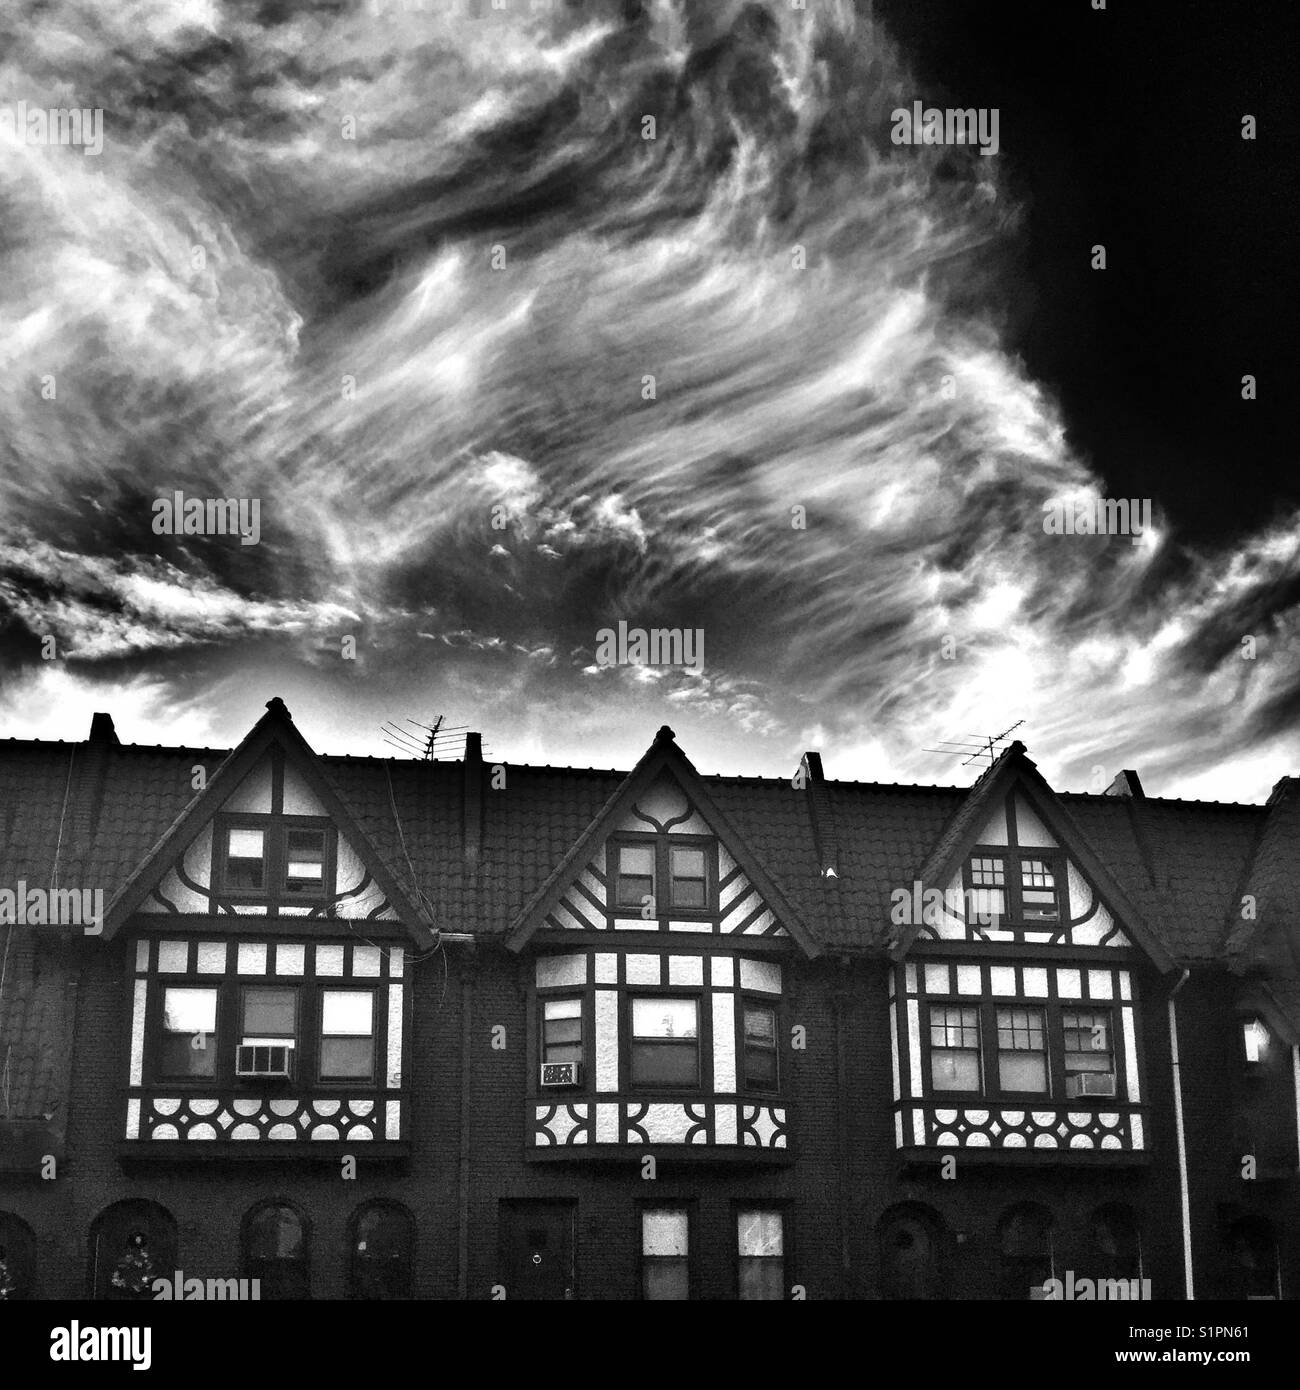 Eine dramatische schwarz-weiß Bild von drei Brooklyn brownstones gegen einen dunklen bewölkter Himmel Stockfoto